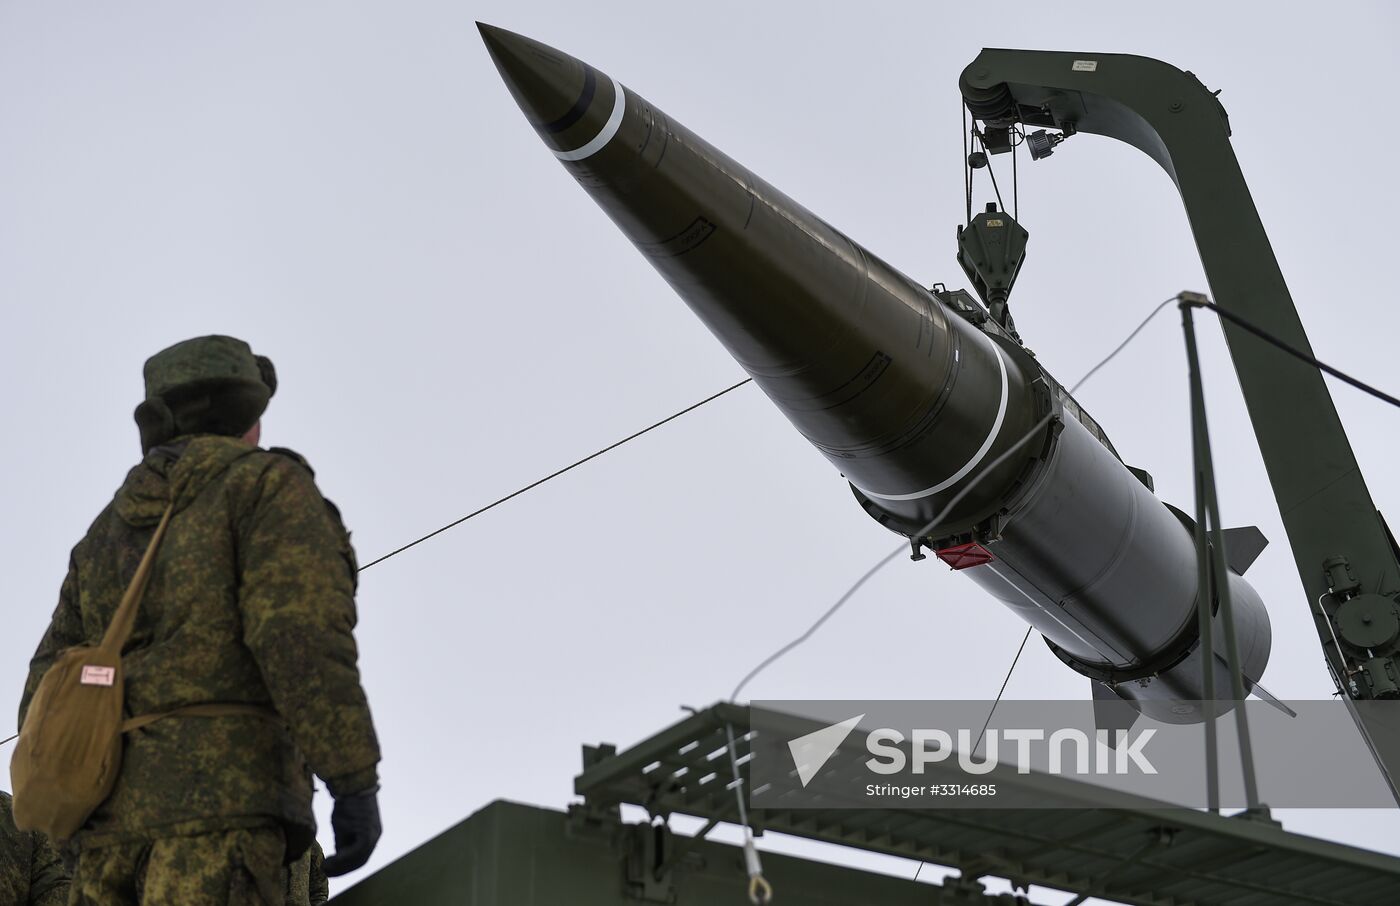 Iskander-M missile system launched at Kapustin Yar range